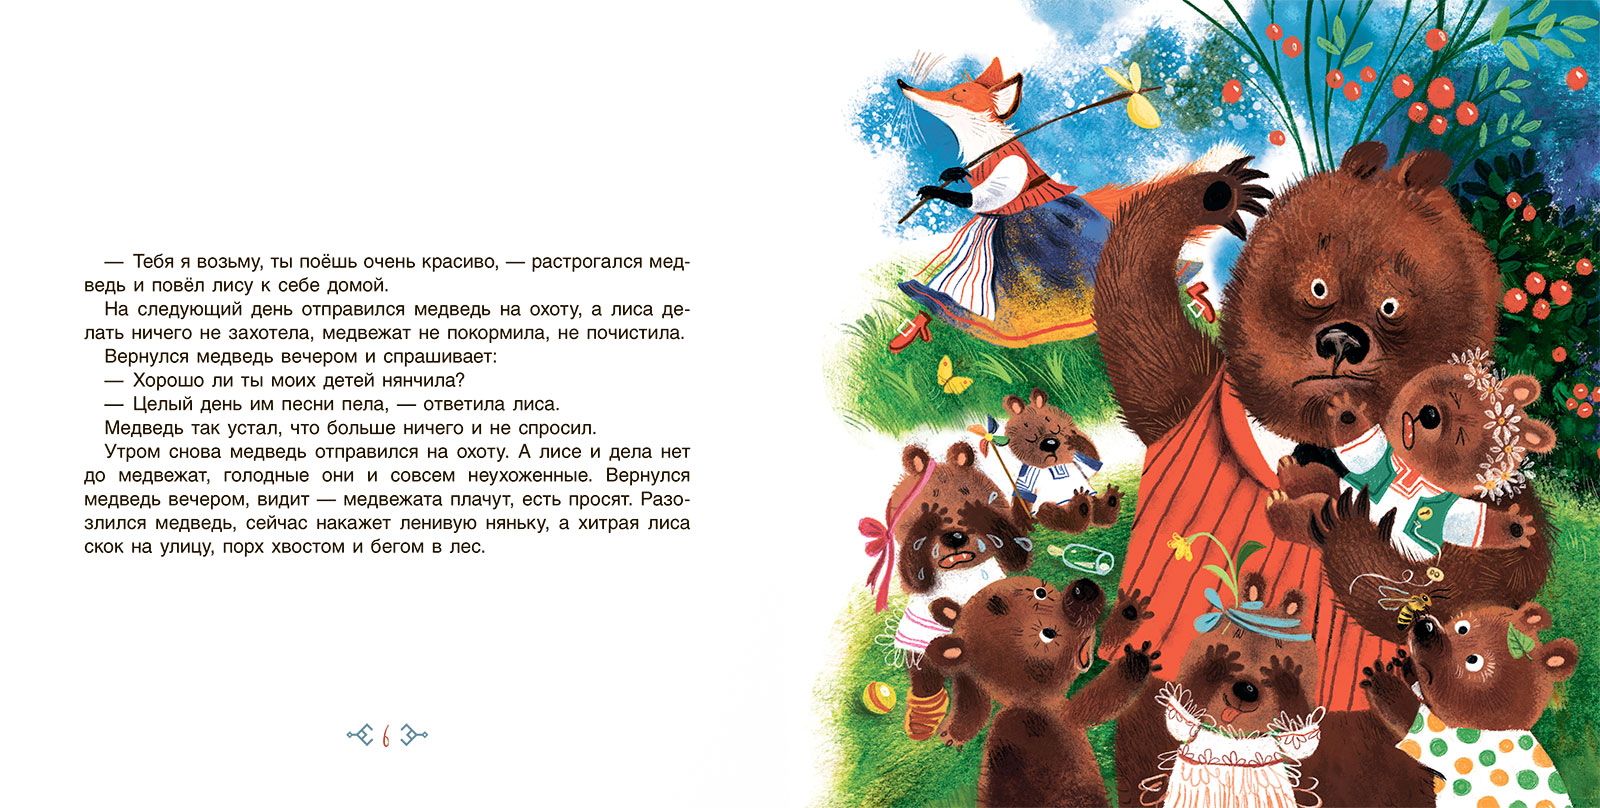 Сборник Белка и охотники. Финские сказки. – изображение 3